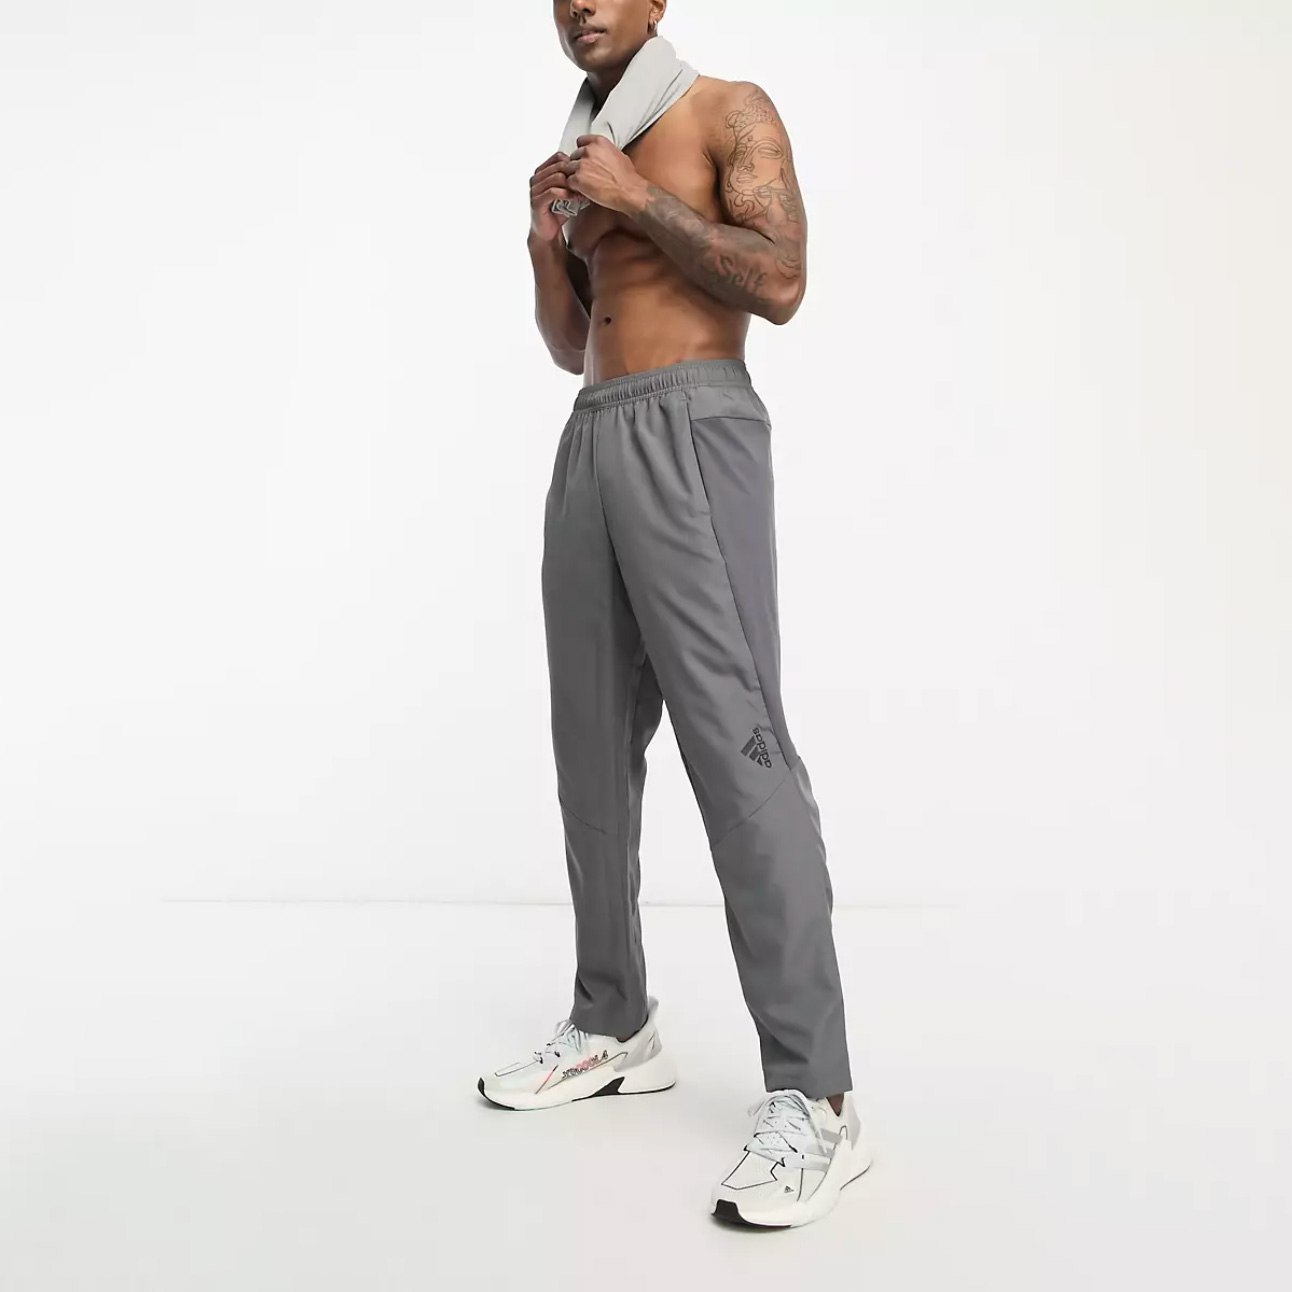 Shirtless man with tattoos wearing grey sweatpants